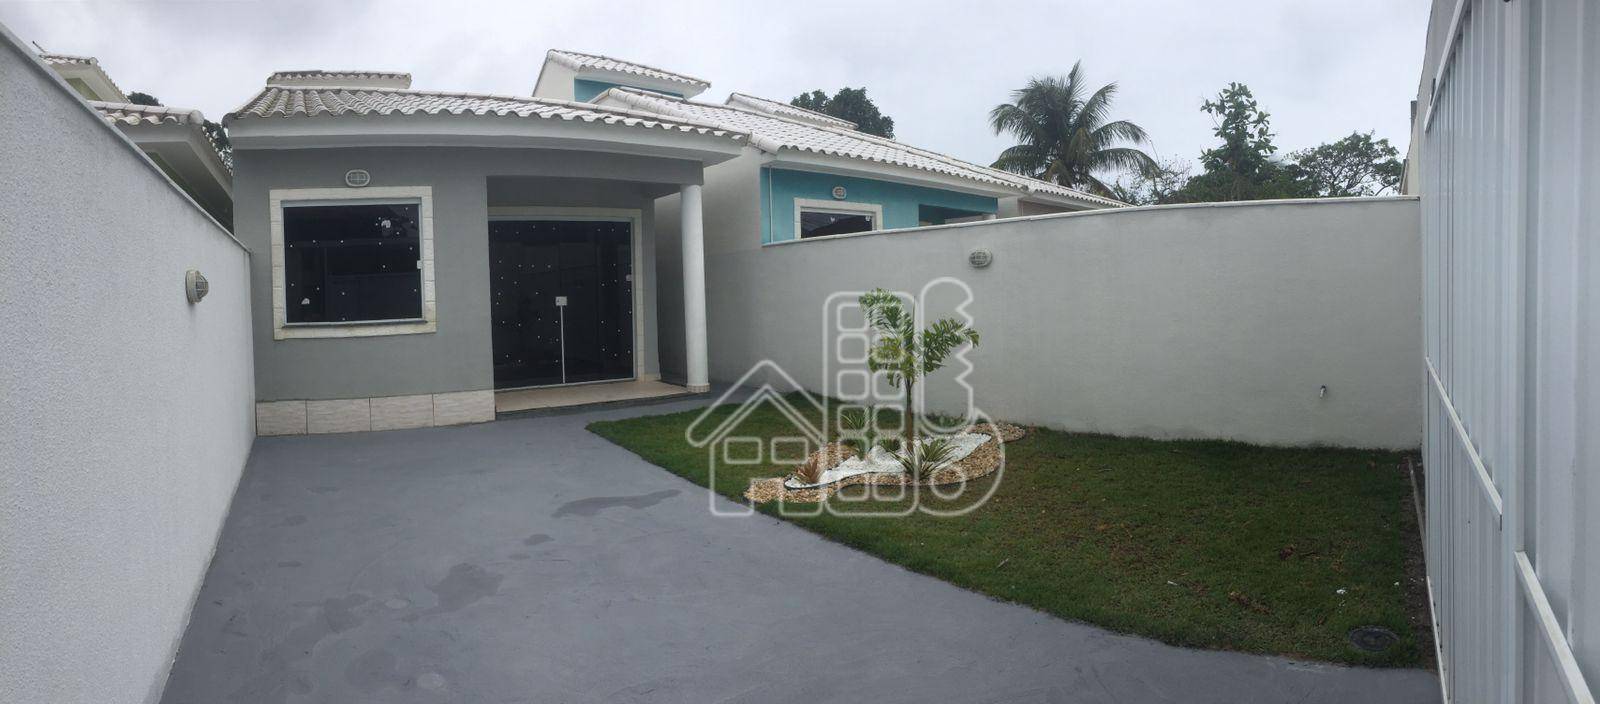 Casa com 3 quartos à venda, 98 m² por R$ 600.000 - Praia de Itaipuaçu (Itaipuaçu) - Maricá/RJ